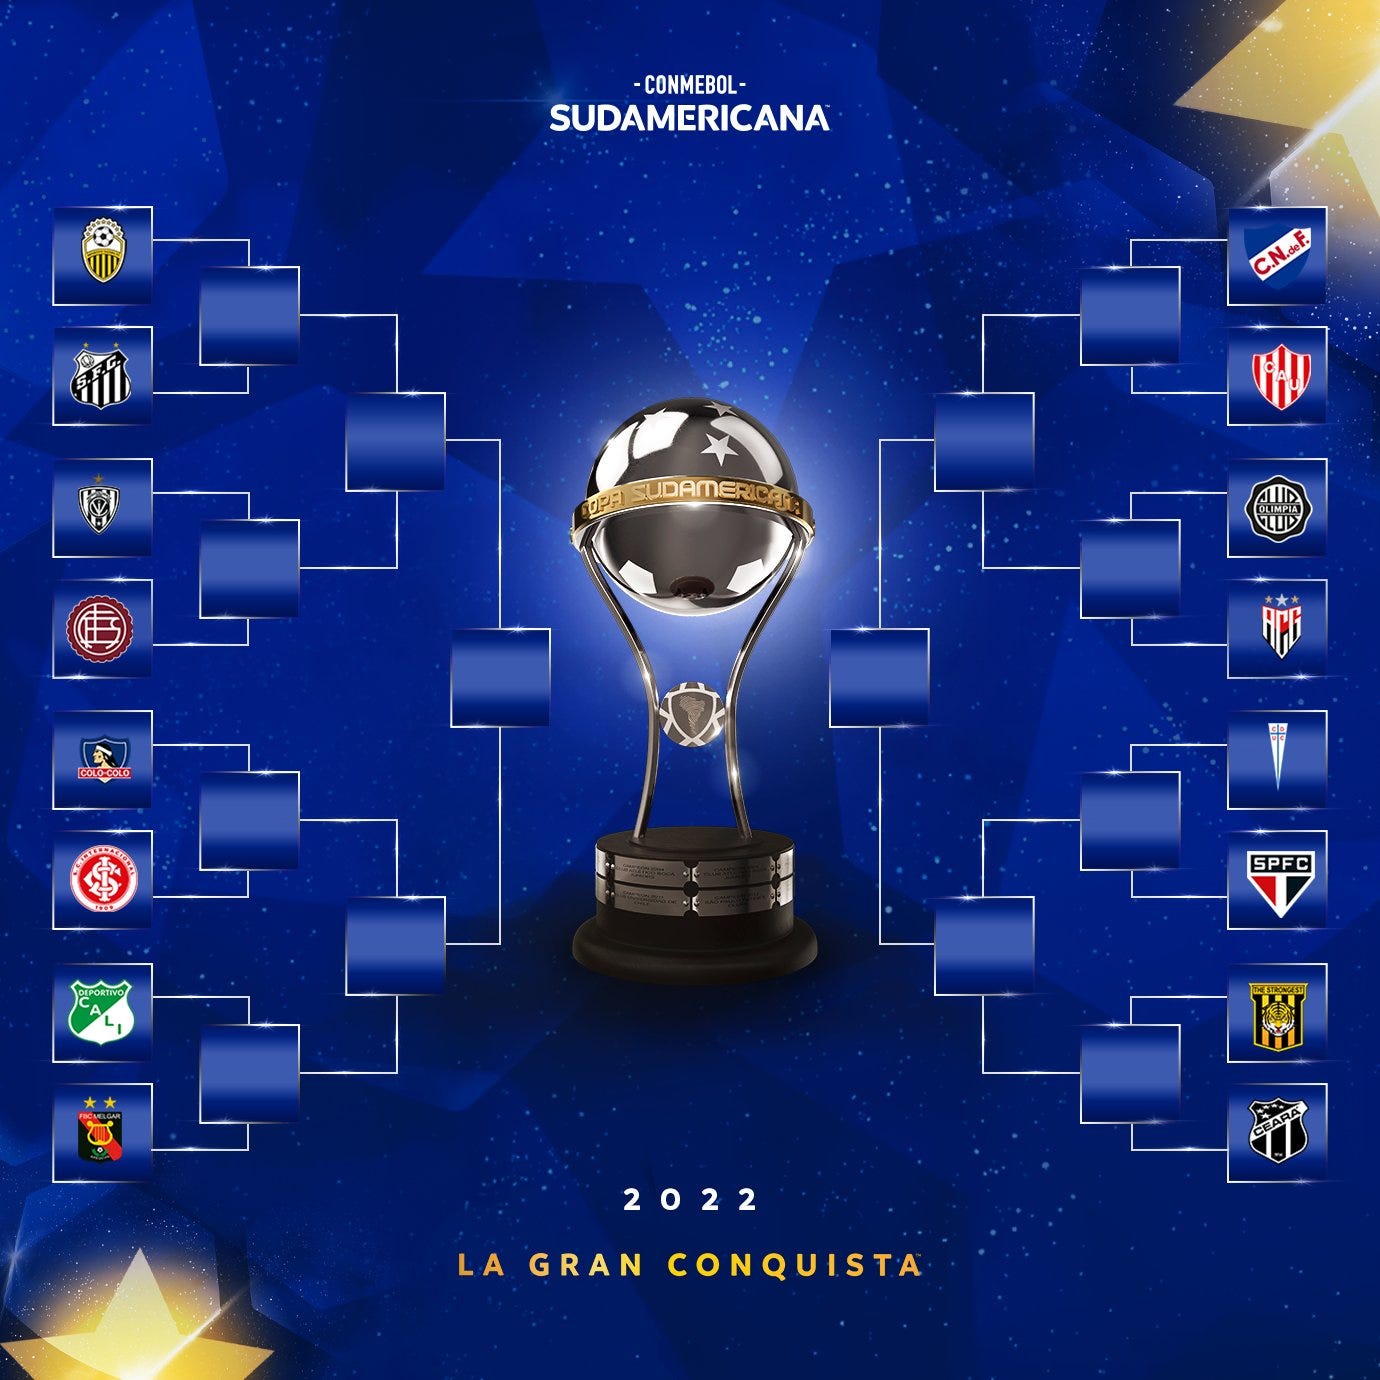 Octavos de final de la Copa Sudamericana 2022 fechas, equipos